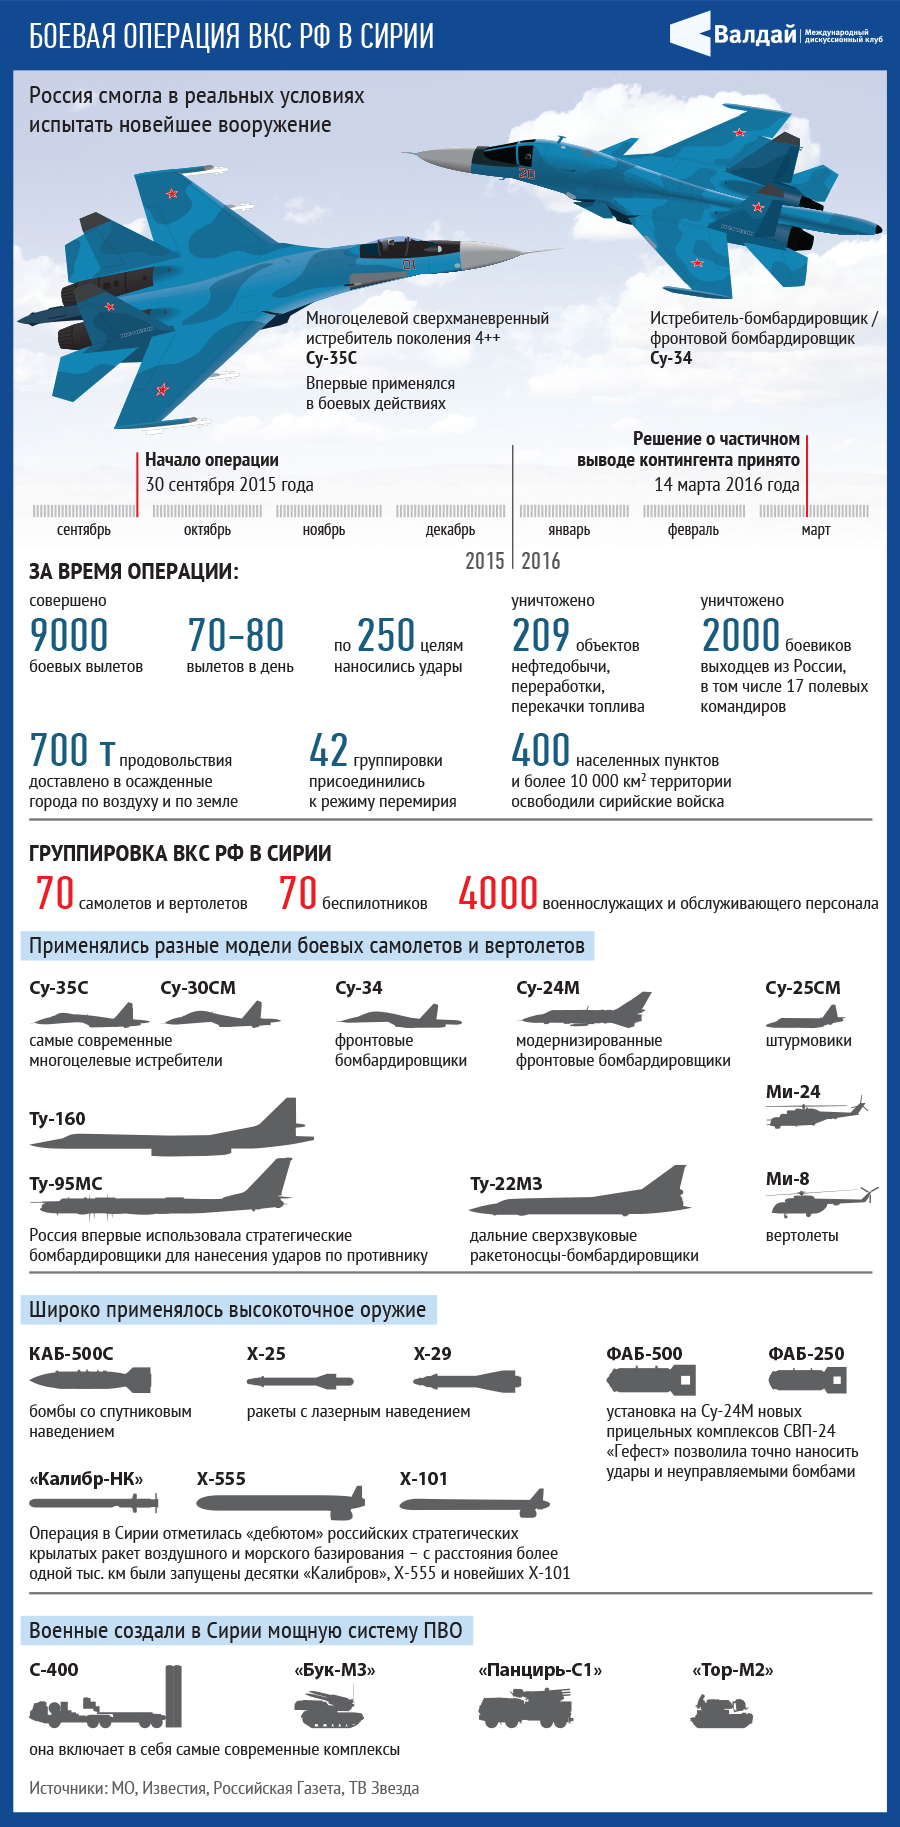 Количество самолетов в авиационном полку